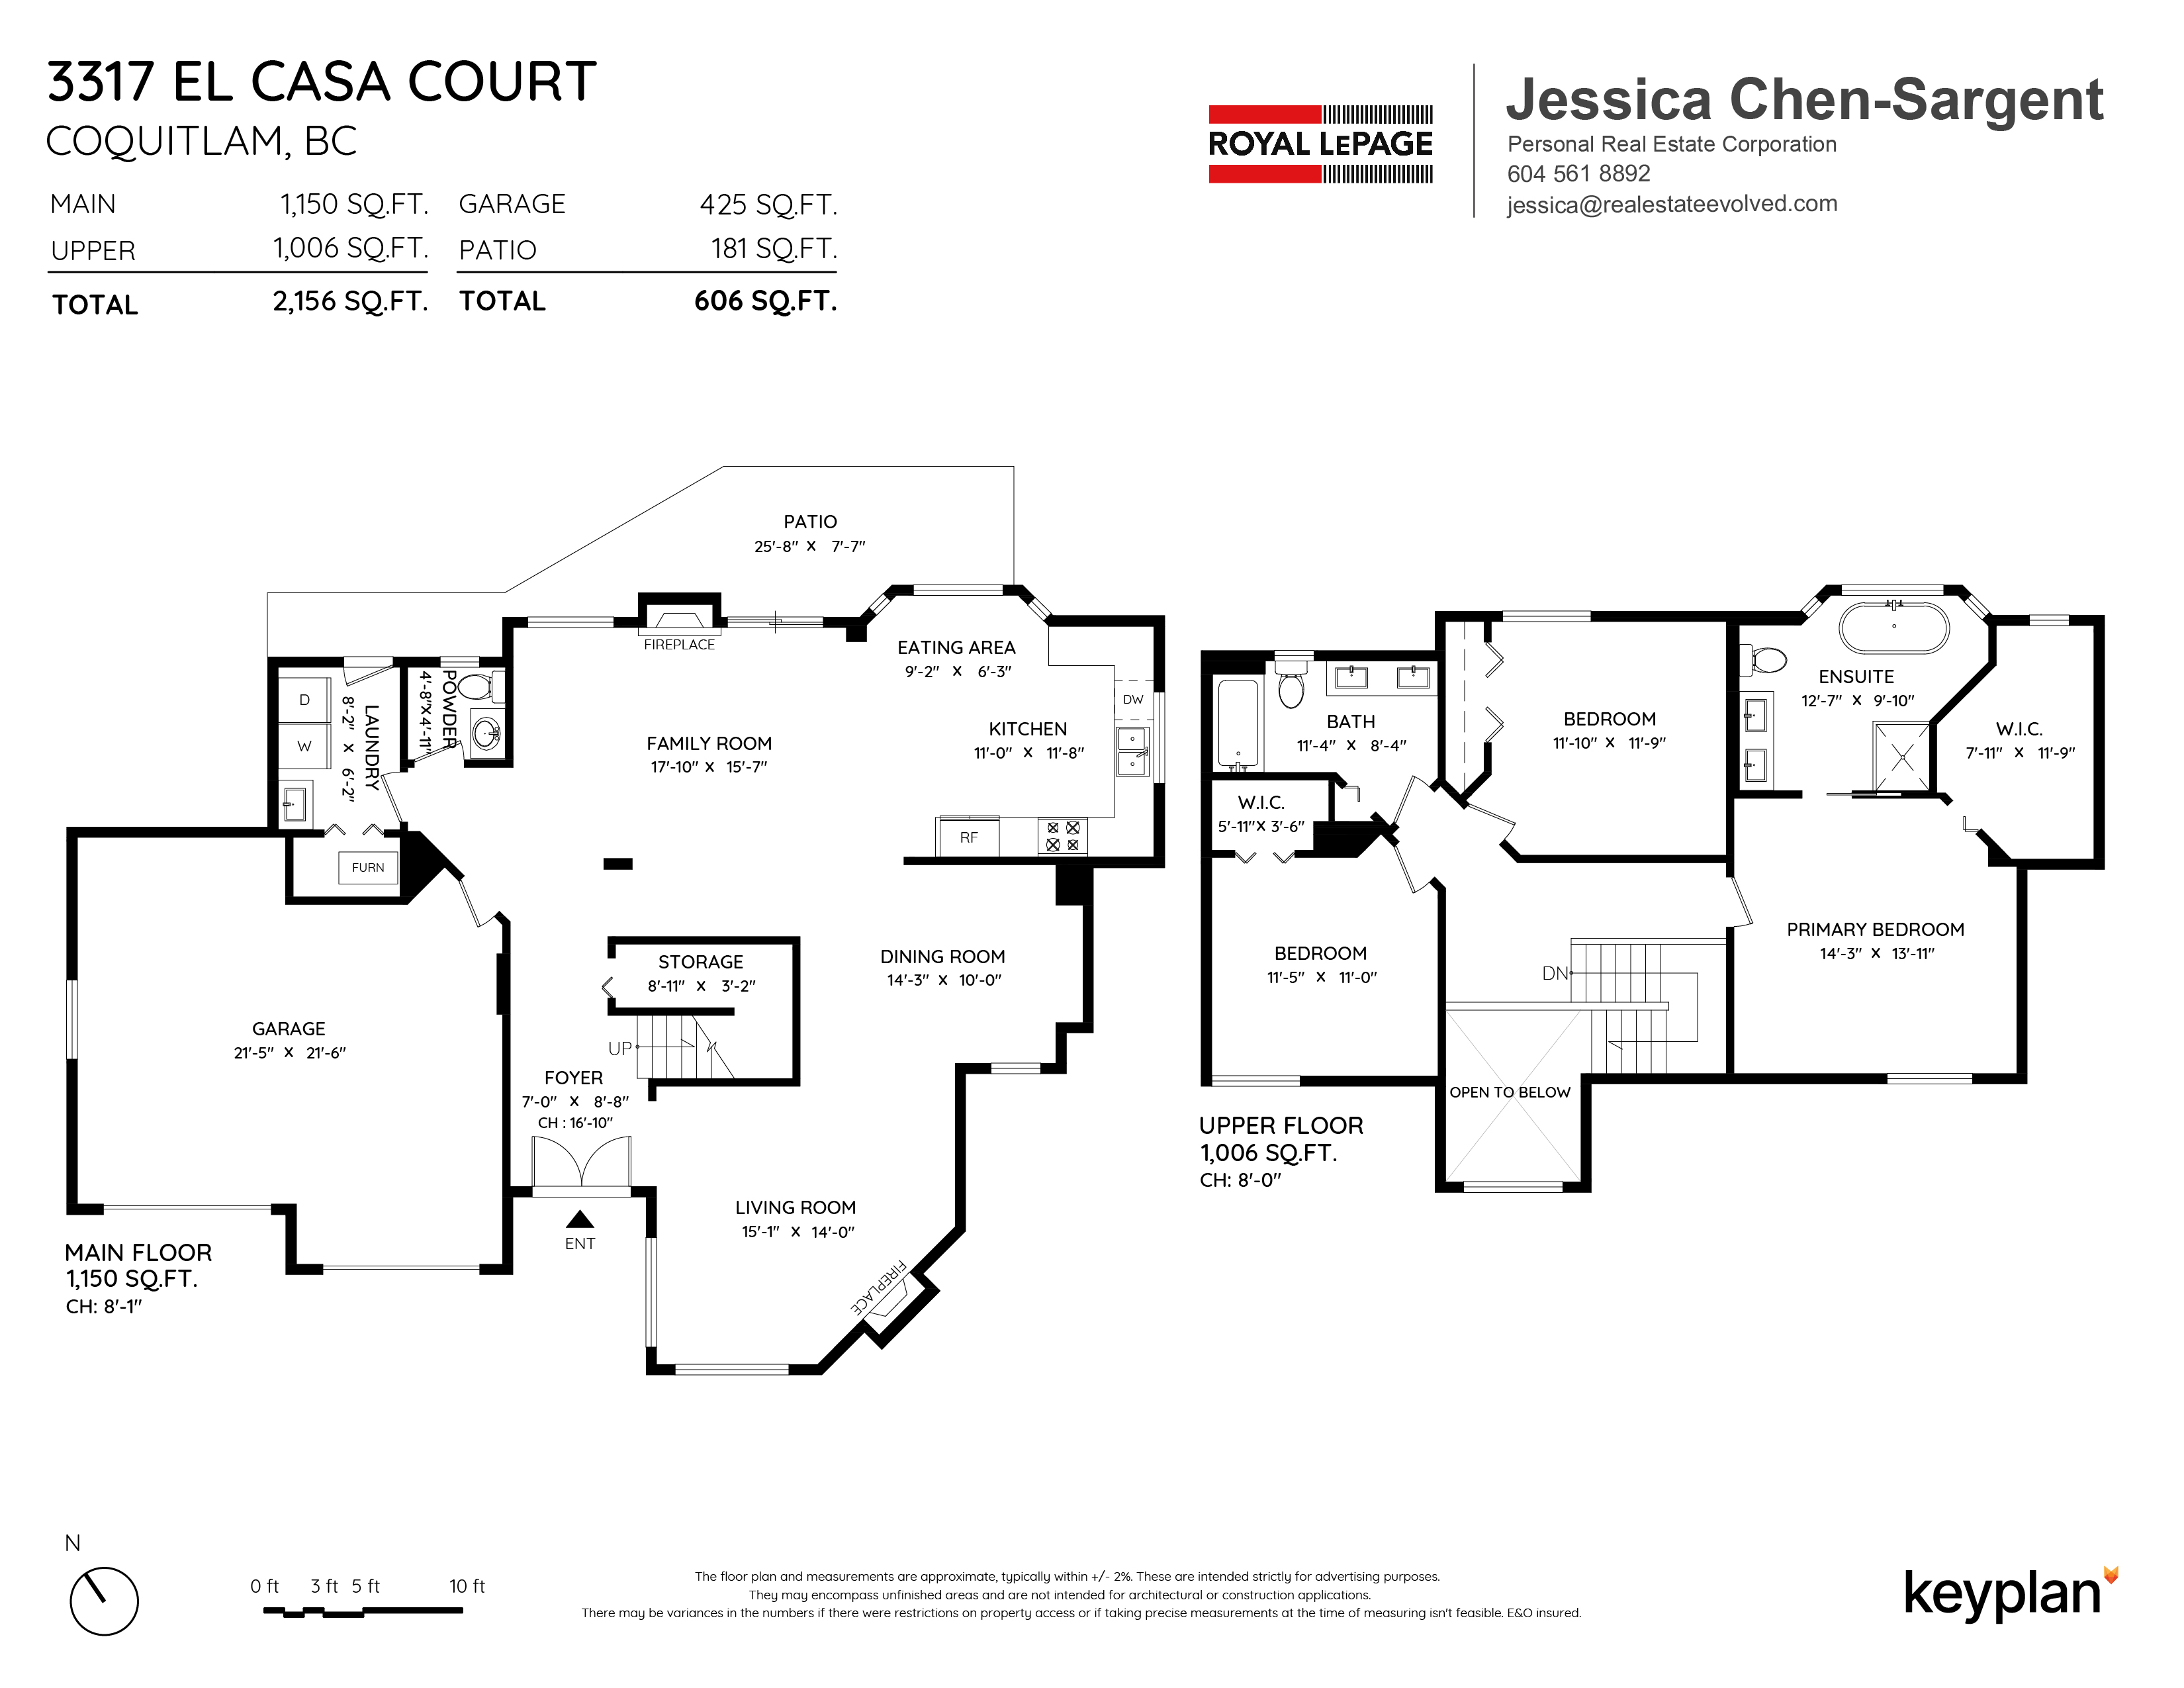 Jessica Chen-Sargent - 3317 El Casa Court, Coquitlam, BC, Canada | Floor Plan 1